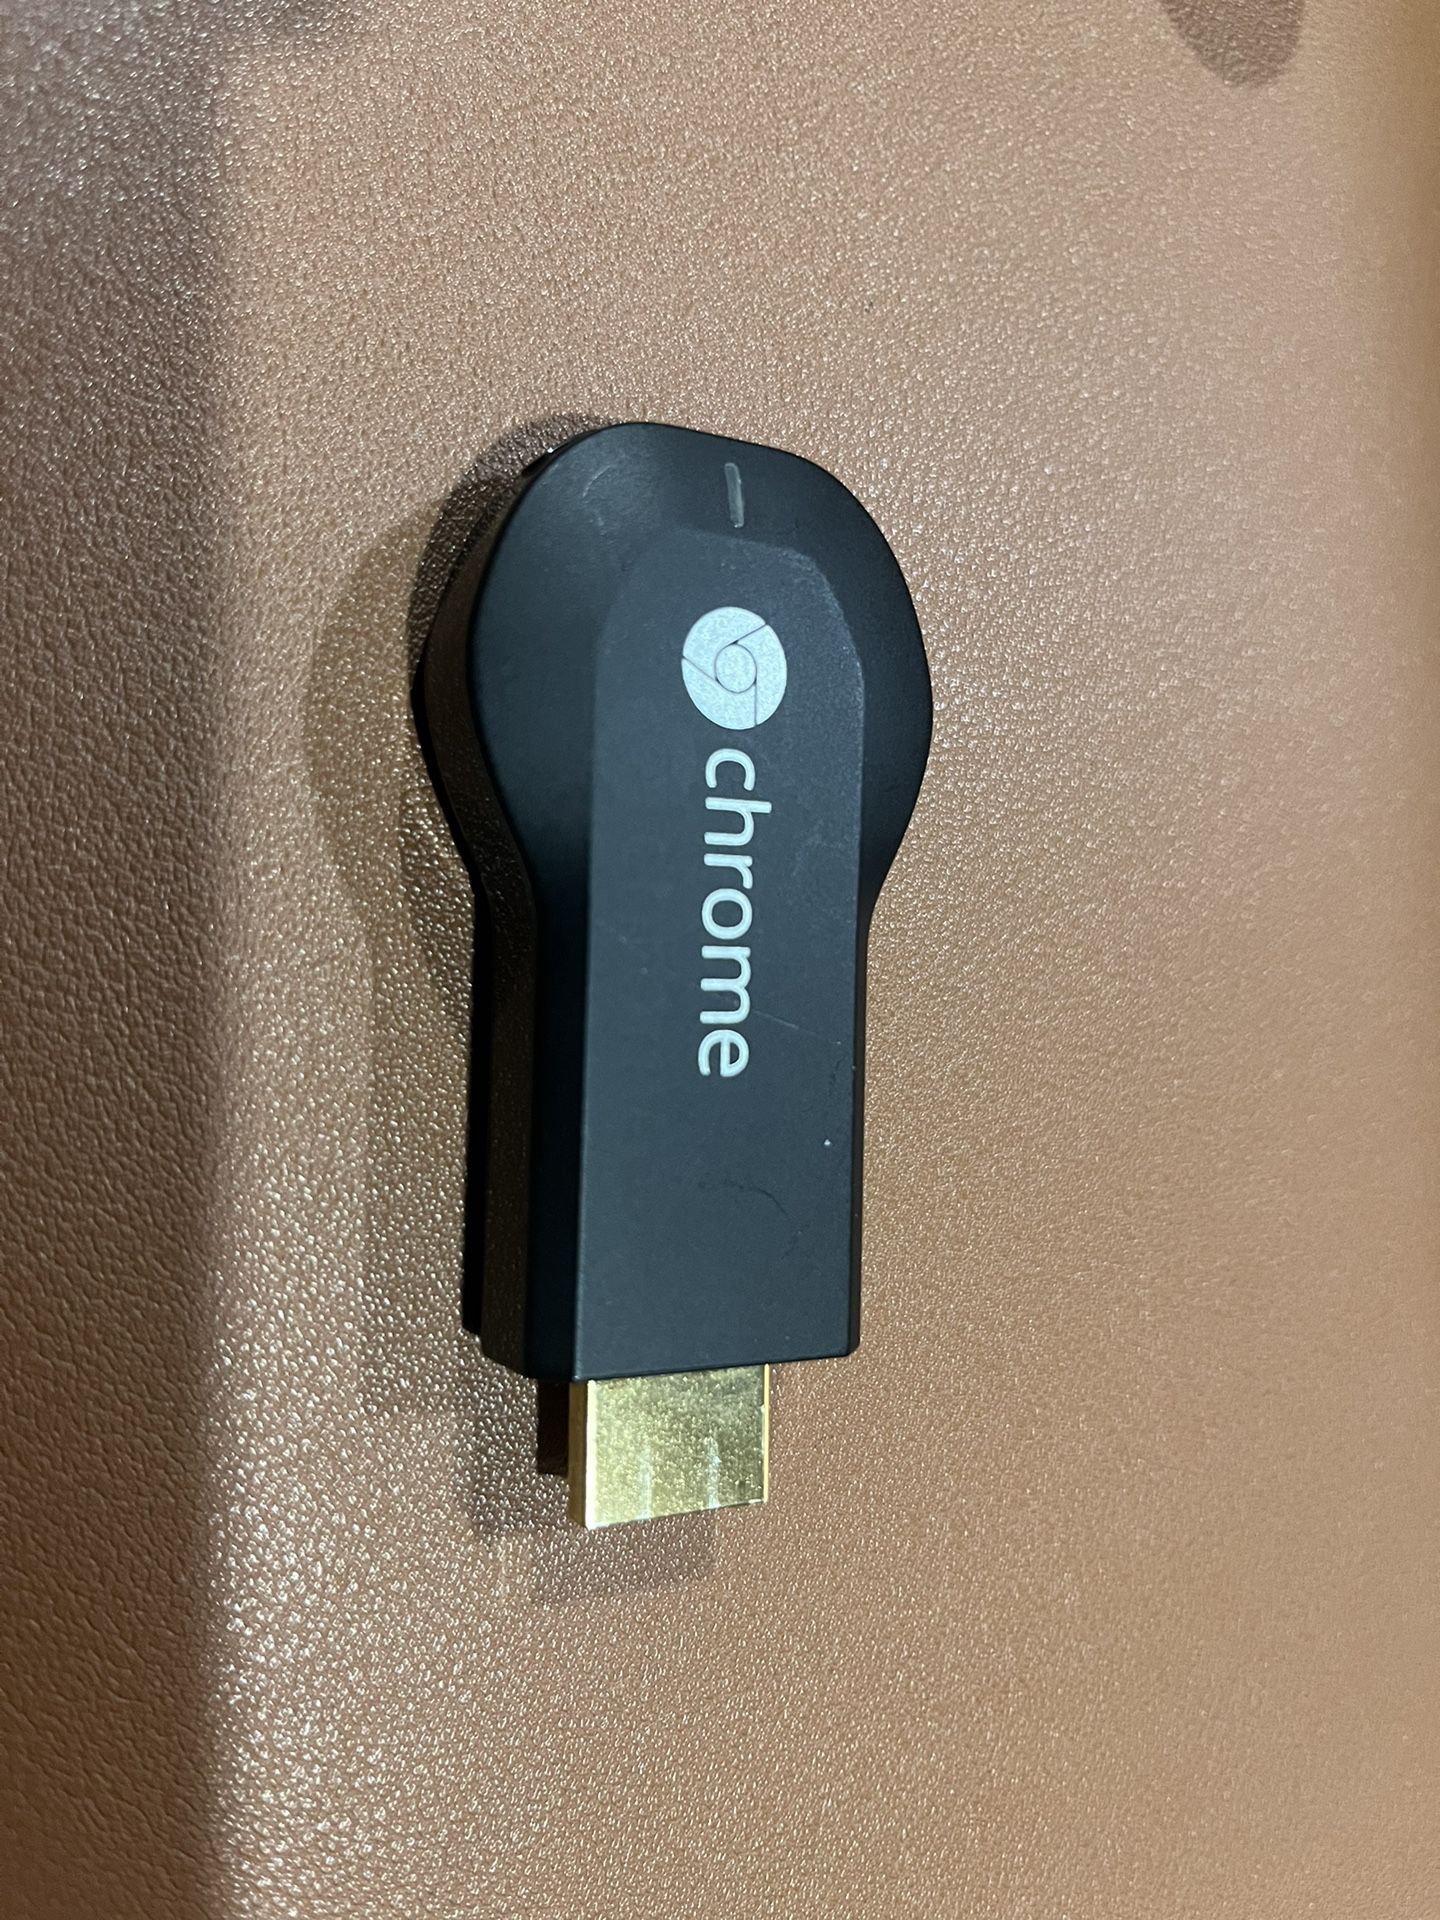 Google HDMI Chromecast